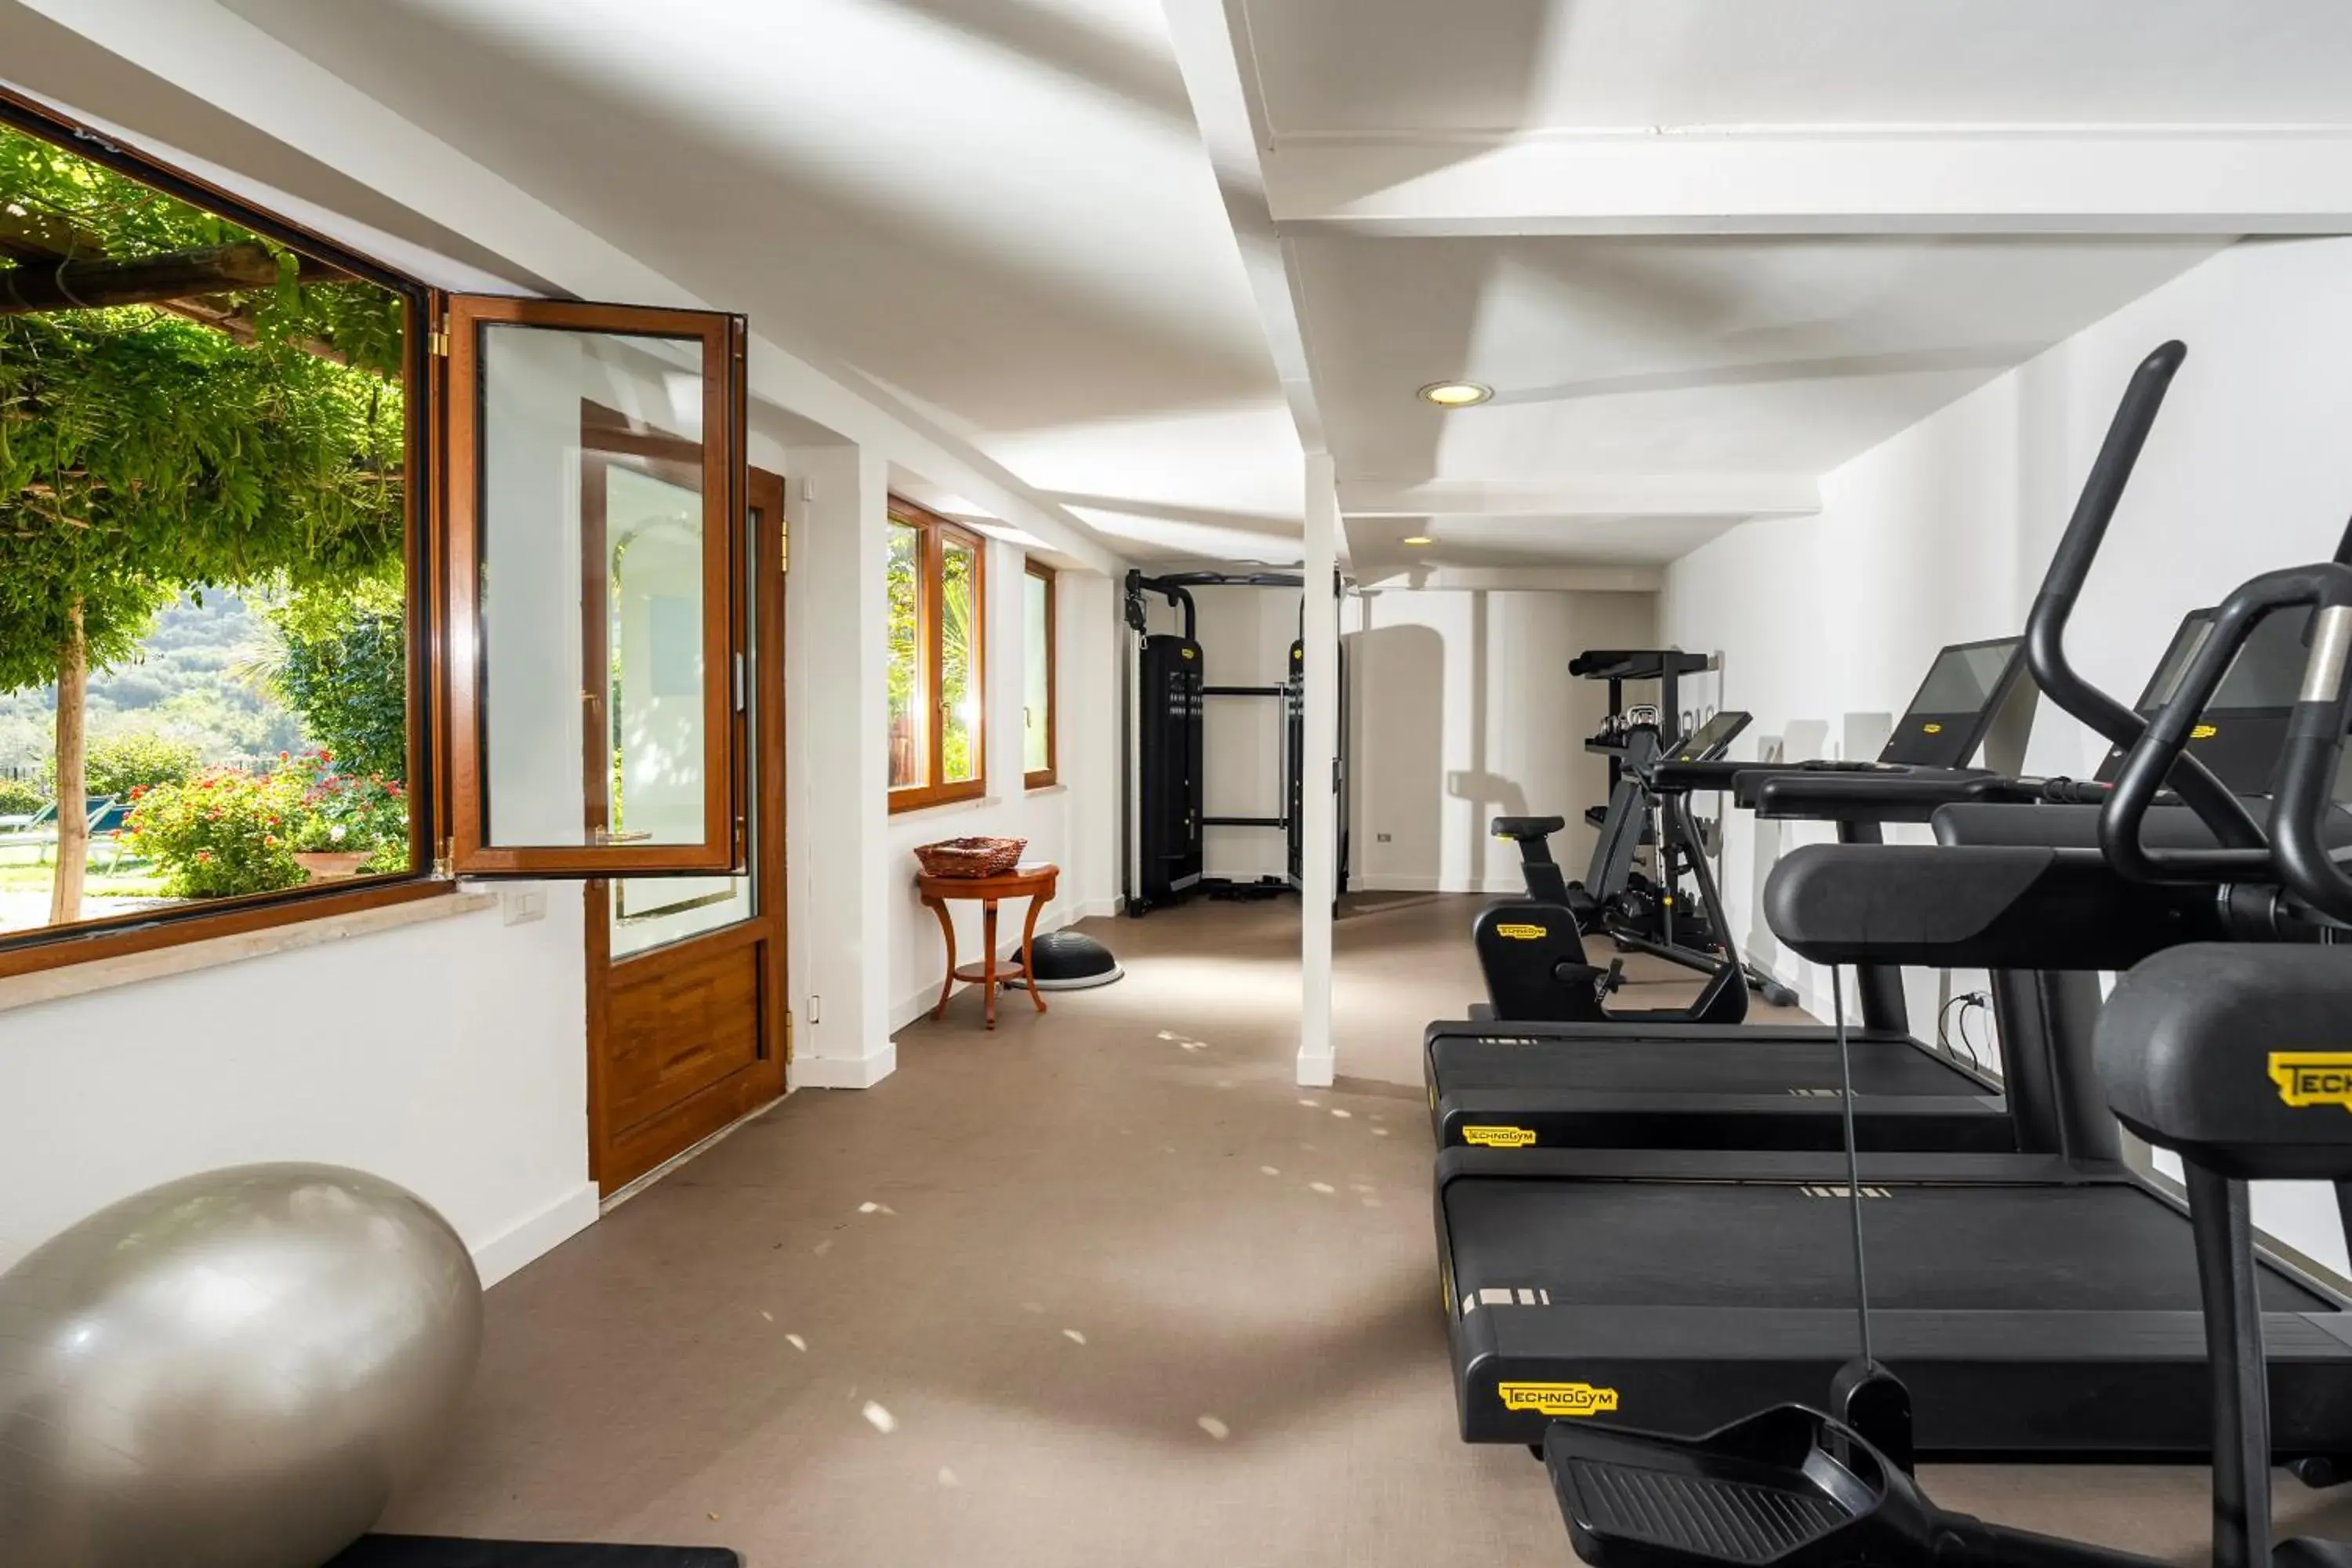 Fitness centre/facilities, Fitness Center/Facilities in Hotel Grand Vesuvio